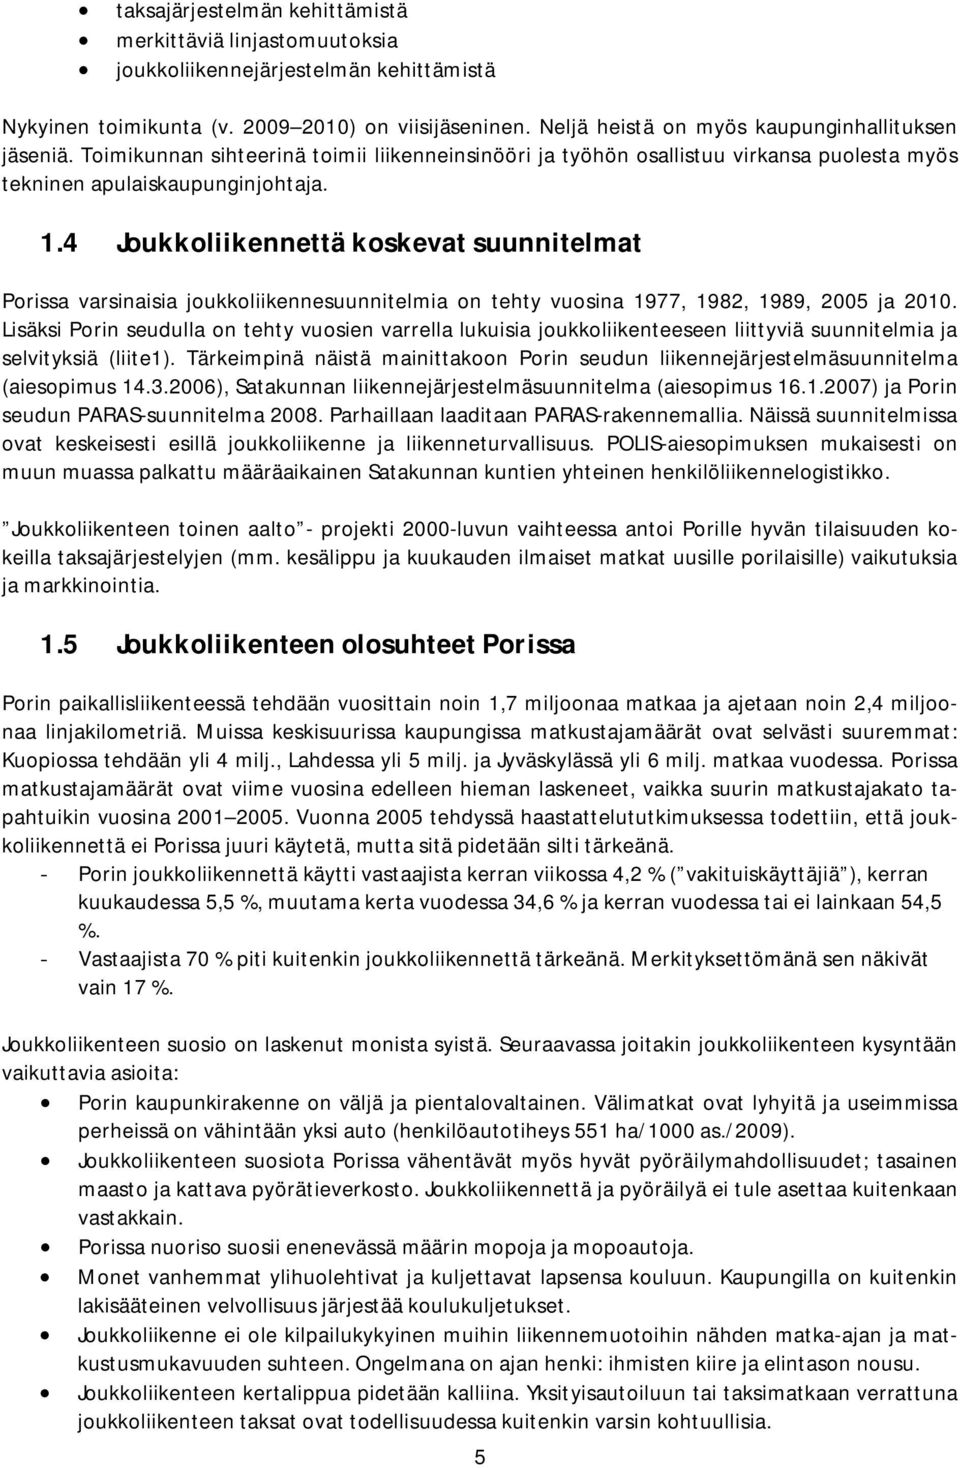 4 Joukkoliikennettä koskevat suunnitelmat Porissa varsinaisia joukkoliikennesuunnitelmia on tehty vuosina 1977, 1982, 1989, 2005 ja 2010.